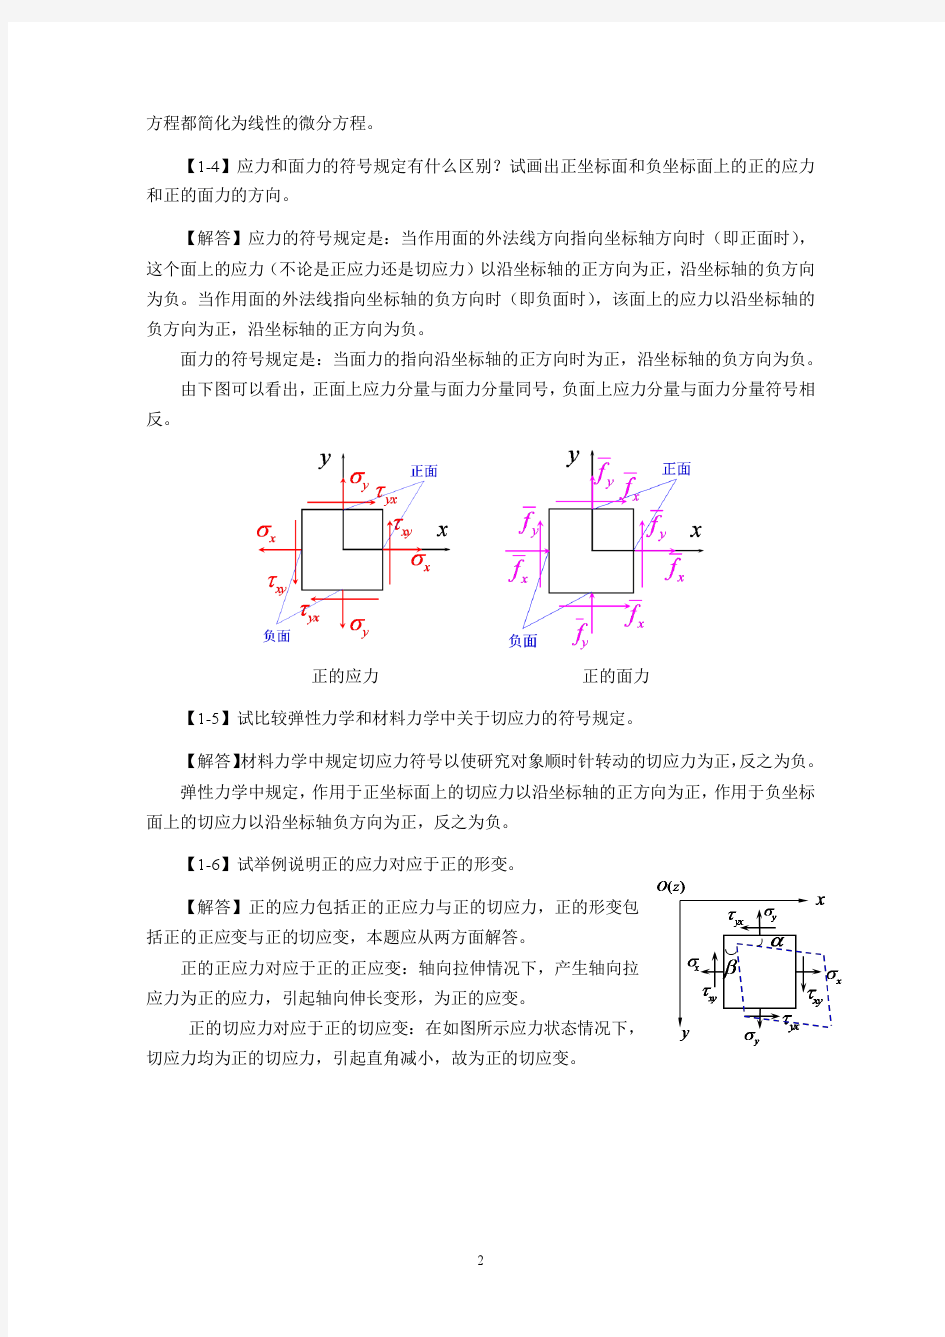 徐芝纶弹性力学简明教程(第四版)所有课后习题解答